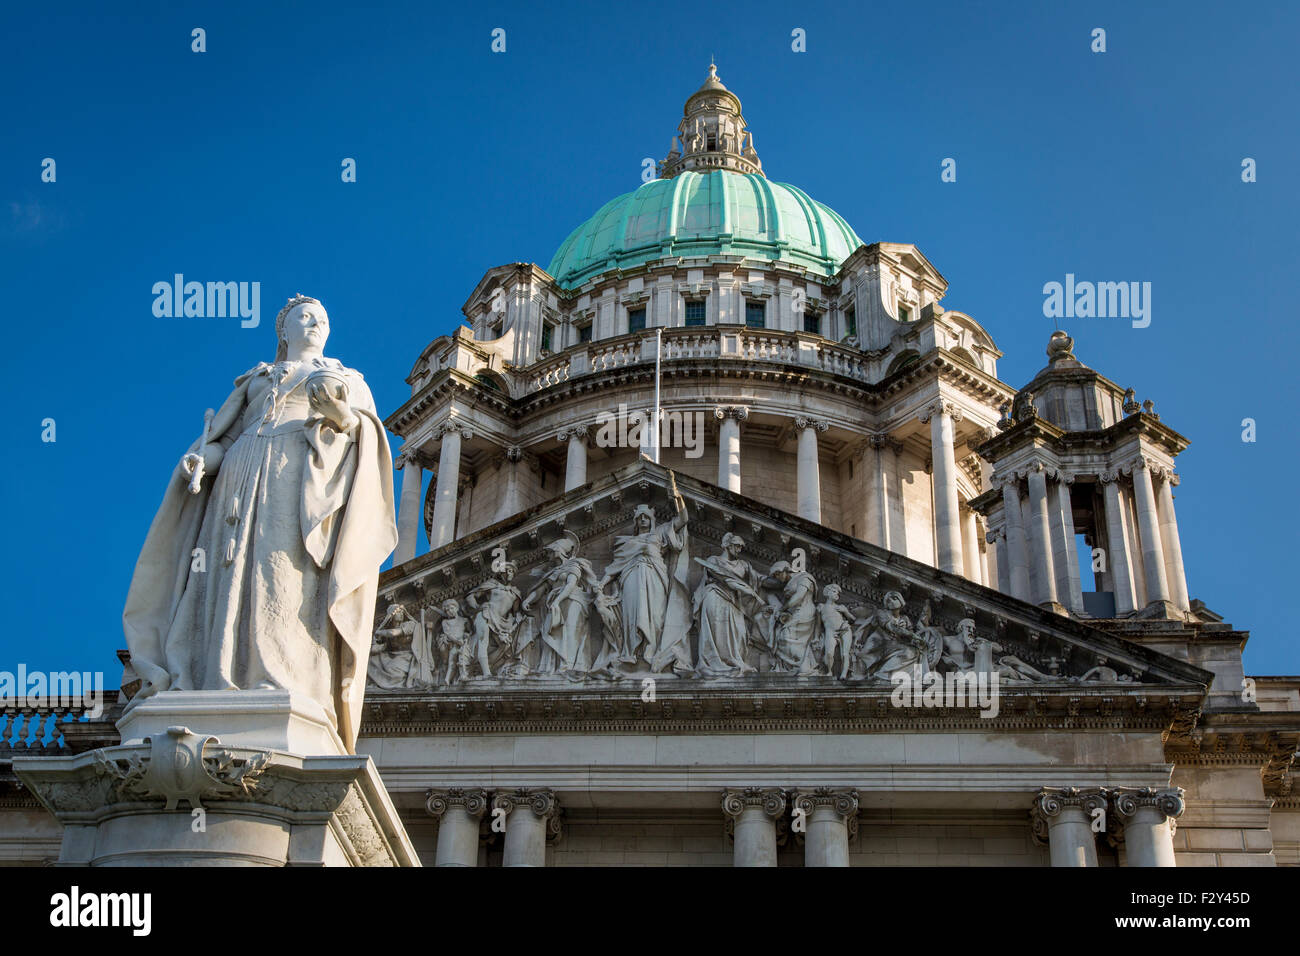 Statue de la reine Victoria au-dessous de Belfast City Hall Building, Belfast, Irlande du Nord, Royaume-Uni Banque D'Images